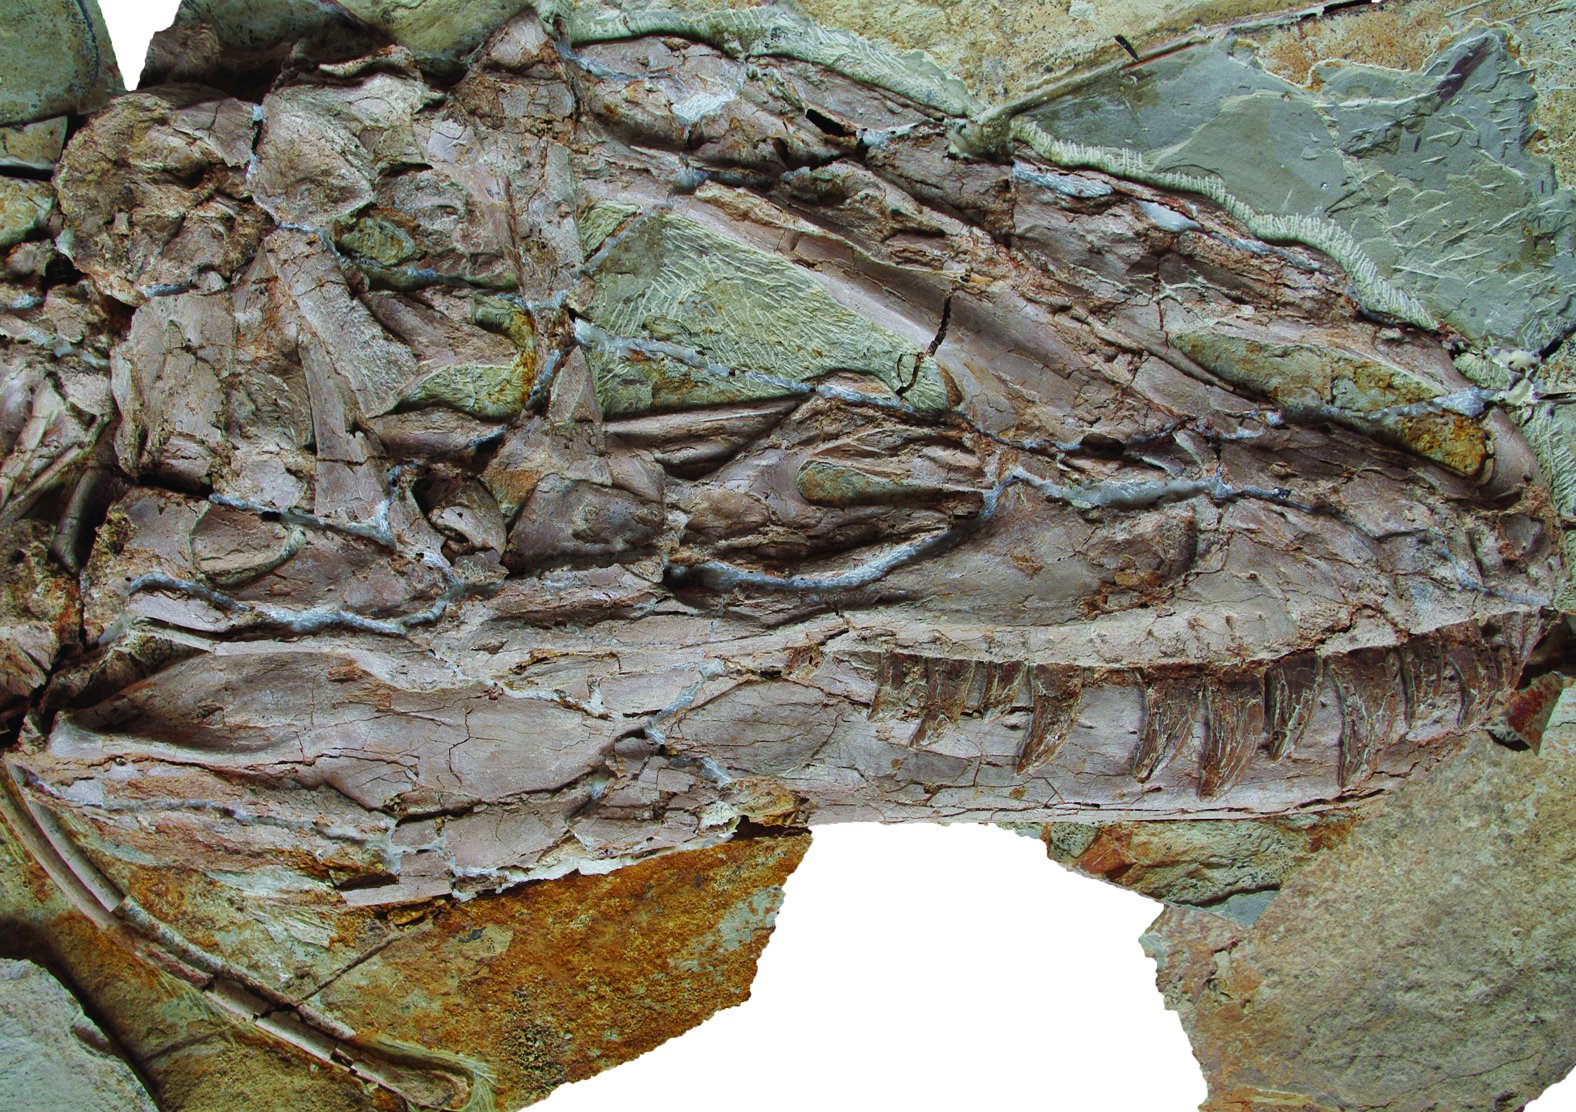 В Китае найден скелет динозавра